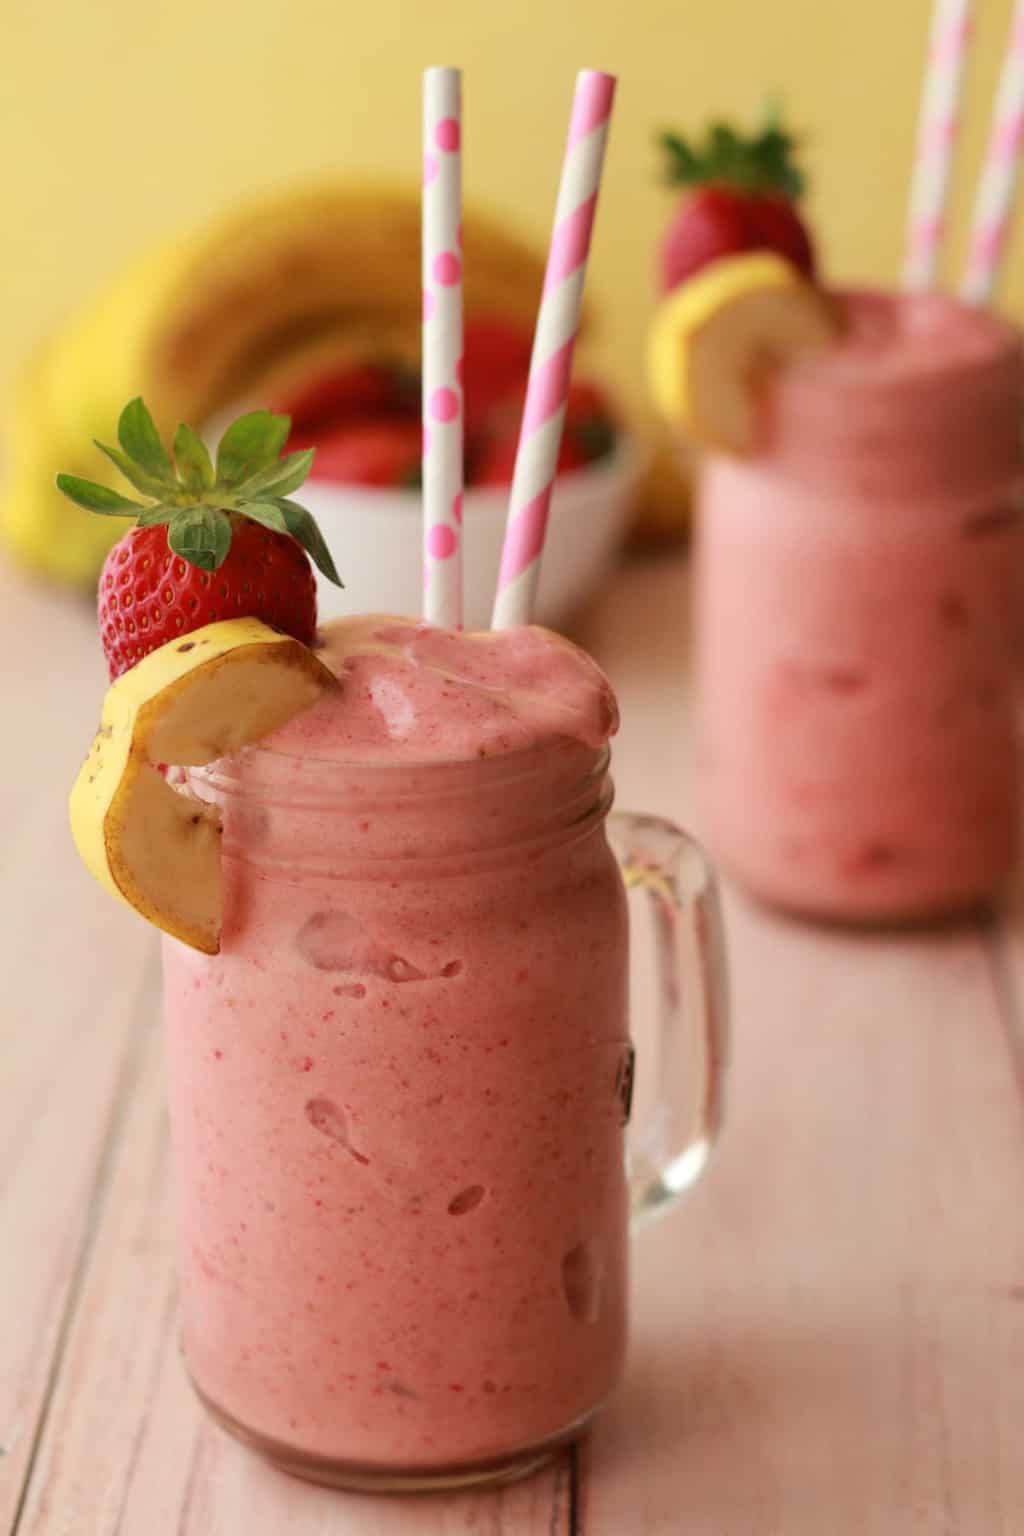 strawberry-banana-smoothie-loving-it-vegan